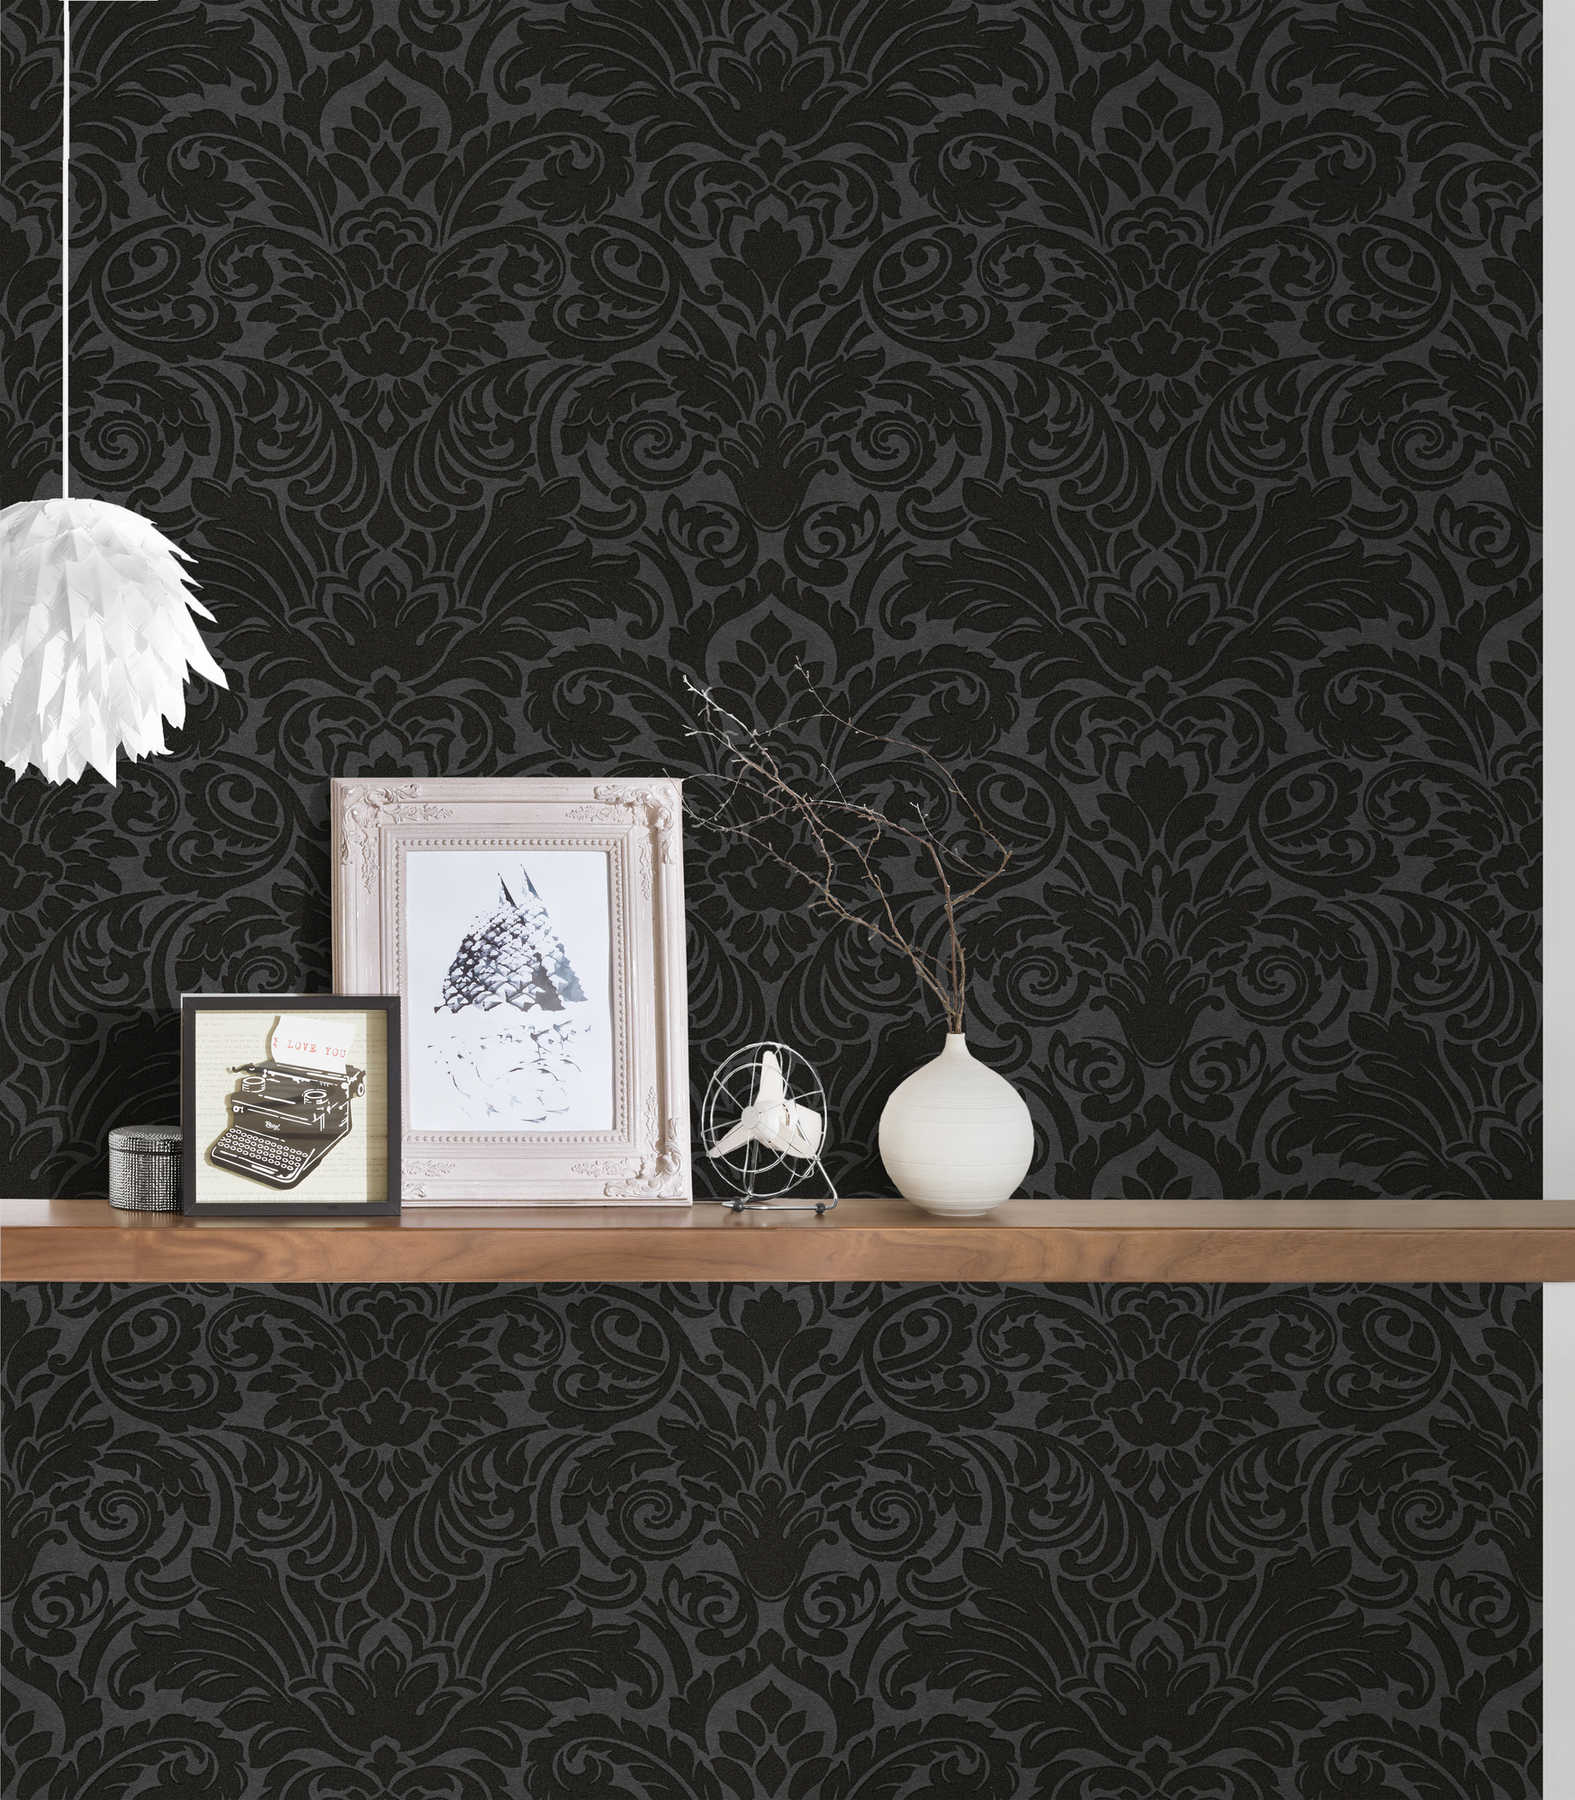             Papier peint ornemental effet métallique & design floral - argenté, noir
        